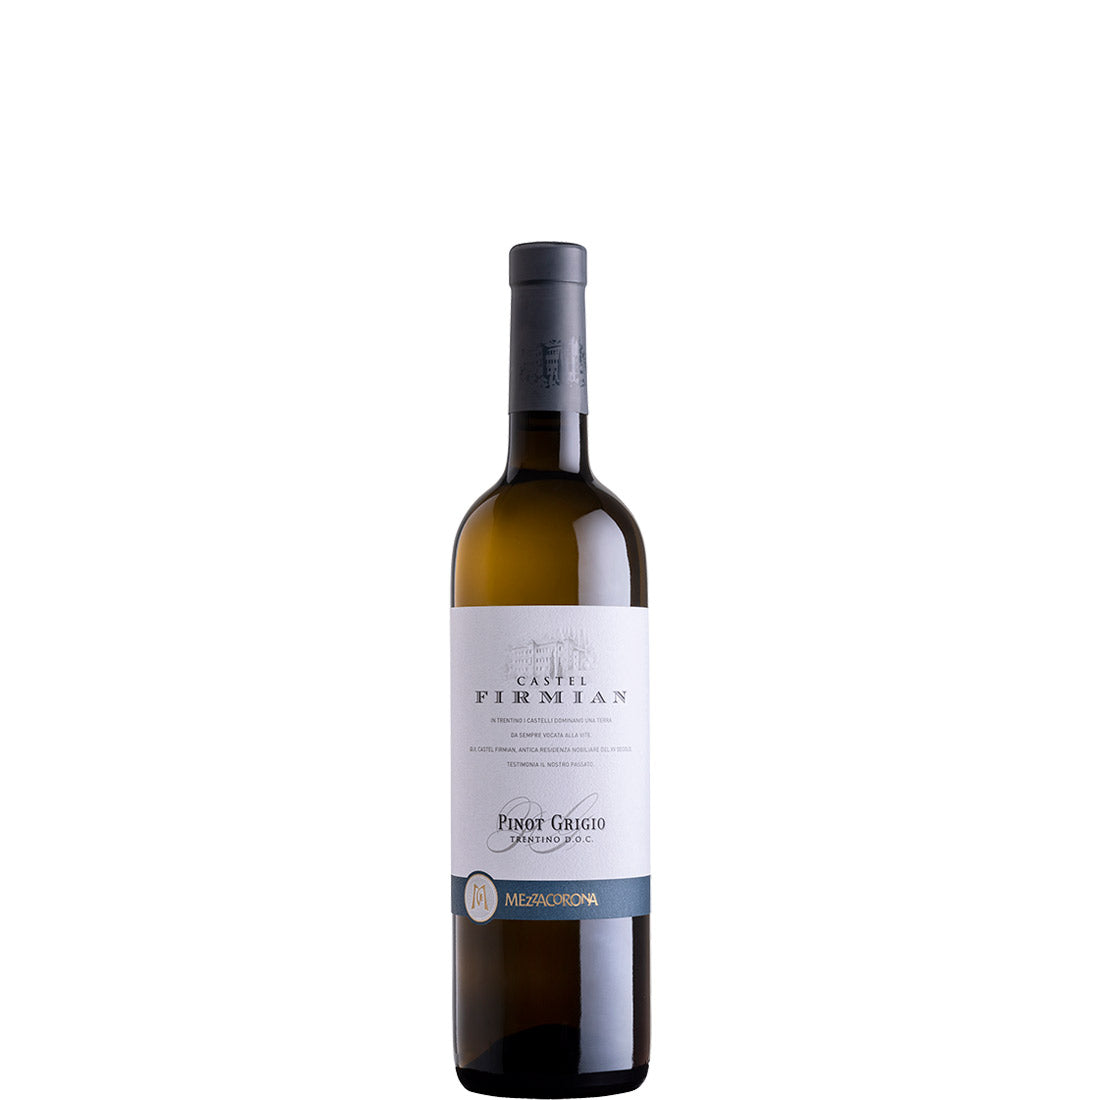 Mezzacorona, Castel Firmian Pinot Grigio, 2019 - Half-bottle